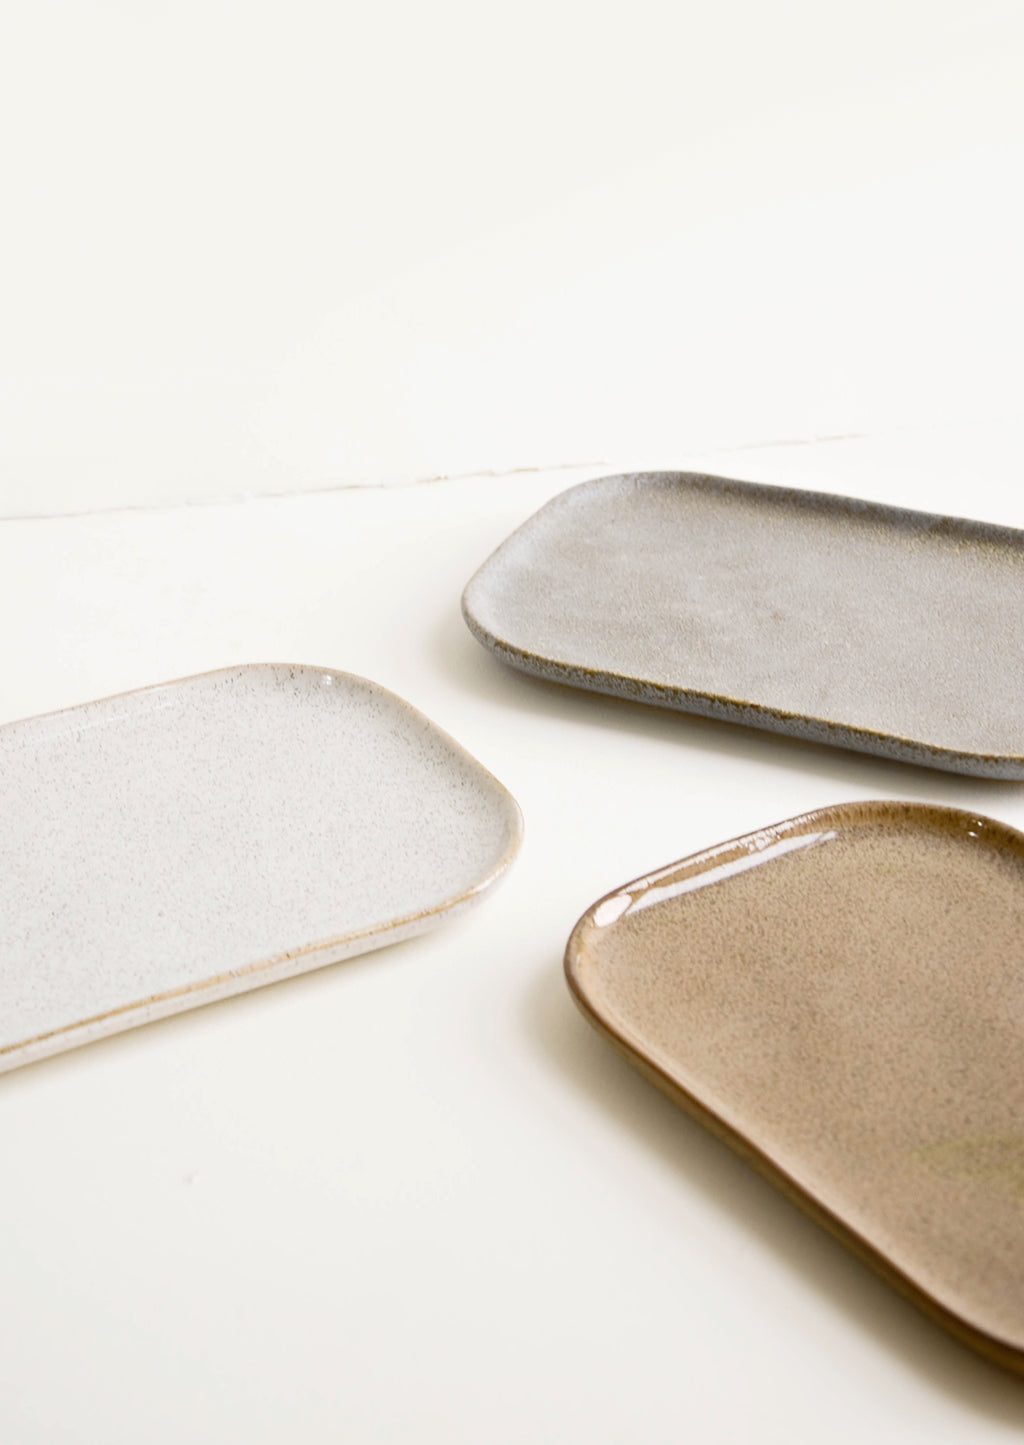 5: Trio of ceramic trays in earth tones.